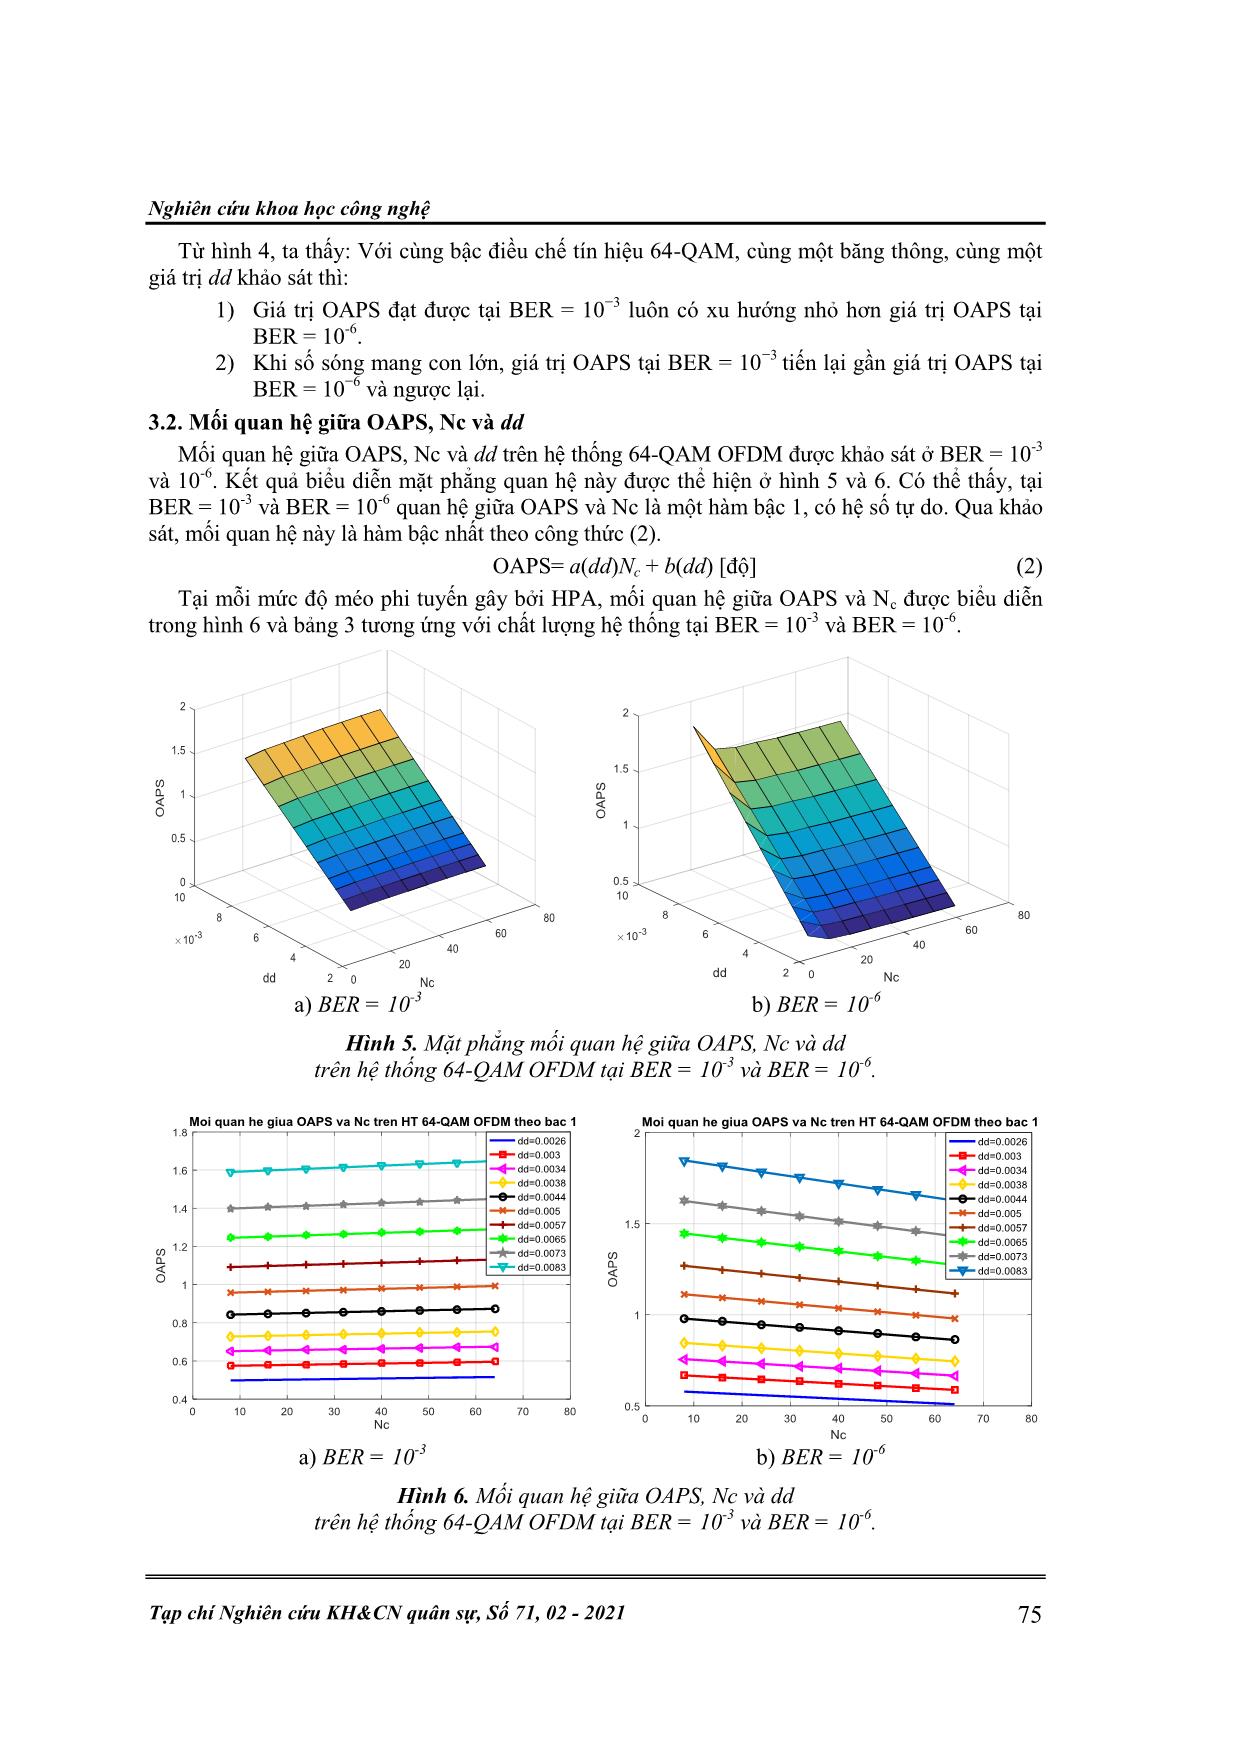 Sử dụng phương pháp quay pha phụ tối ưu để giảm ảnh hưởng của méo phi tuyến trong hệ thống 64-QAM Ofdm trang 5